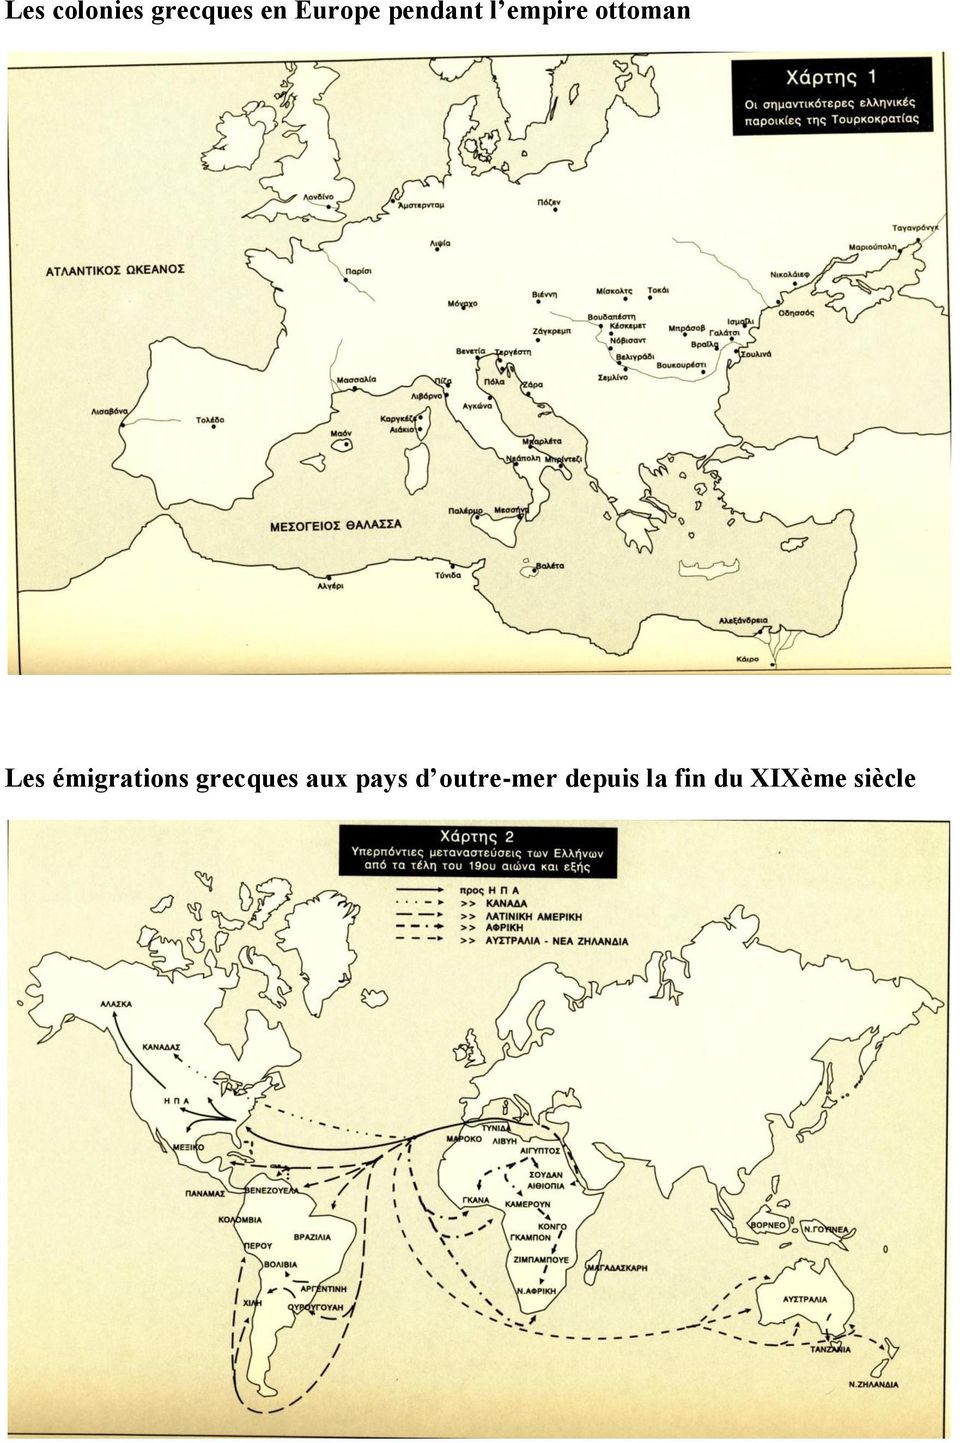 émigrations grecques aux pays d